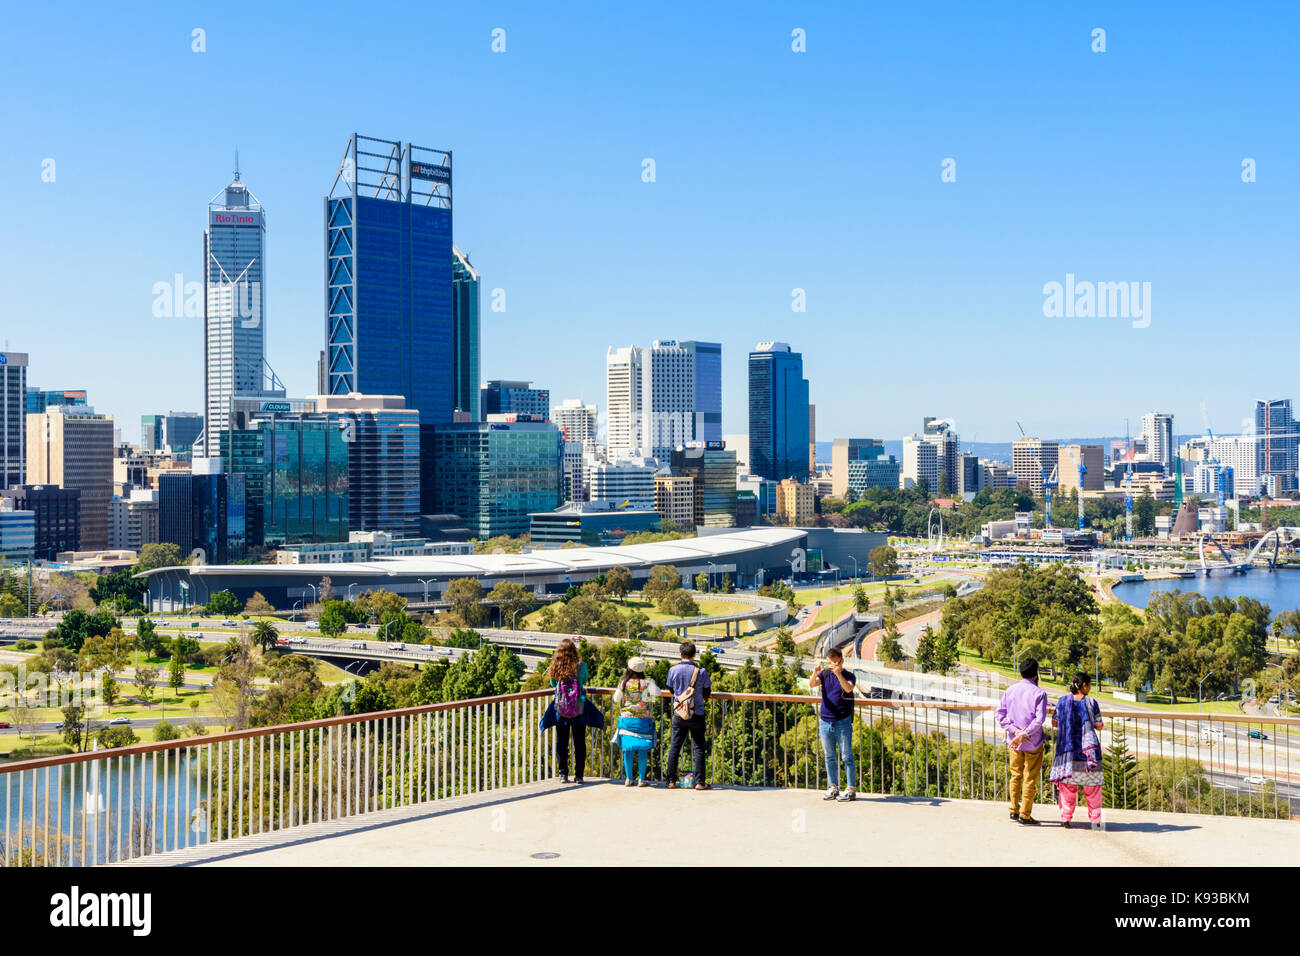 Les personnes à la recherche à la vue de la ville de Perth CBD de Kings Park, Australie occidentale, Australie Banque D'Images